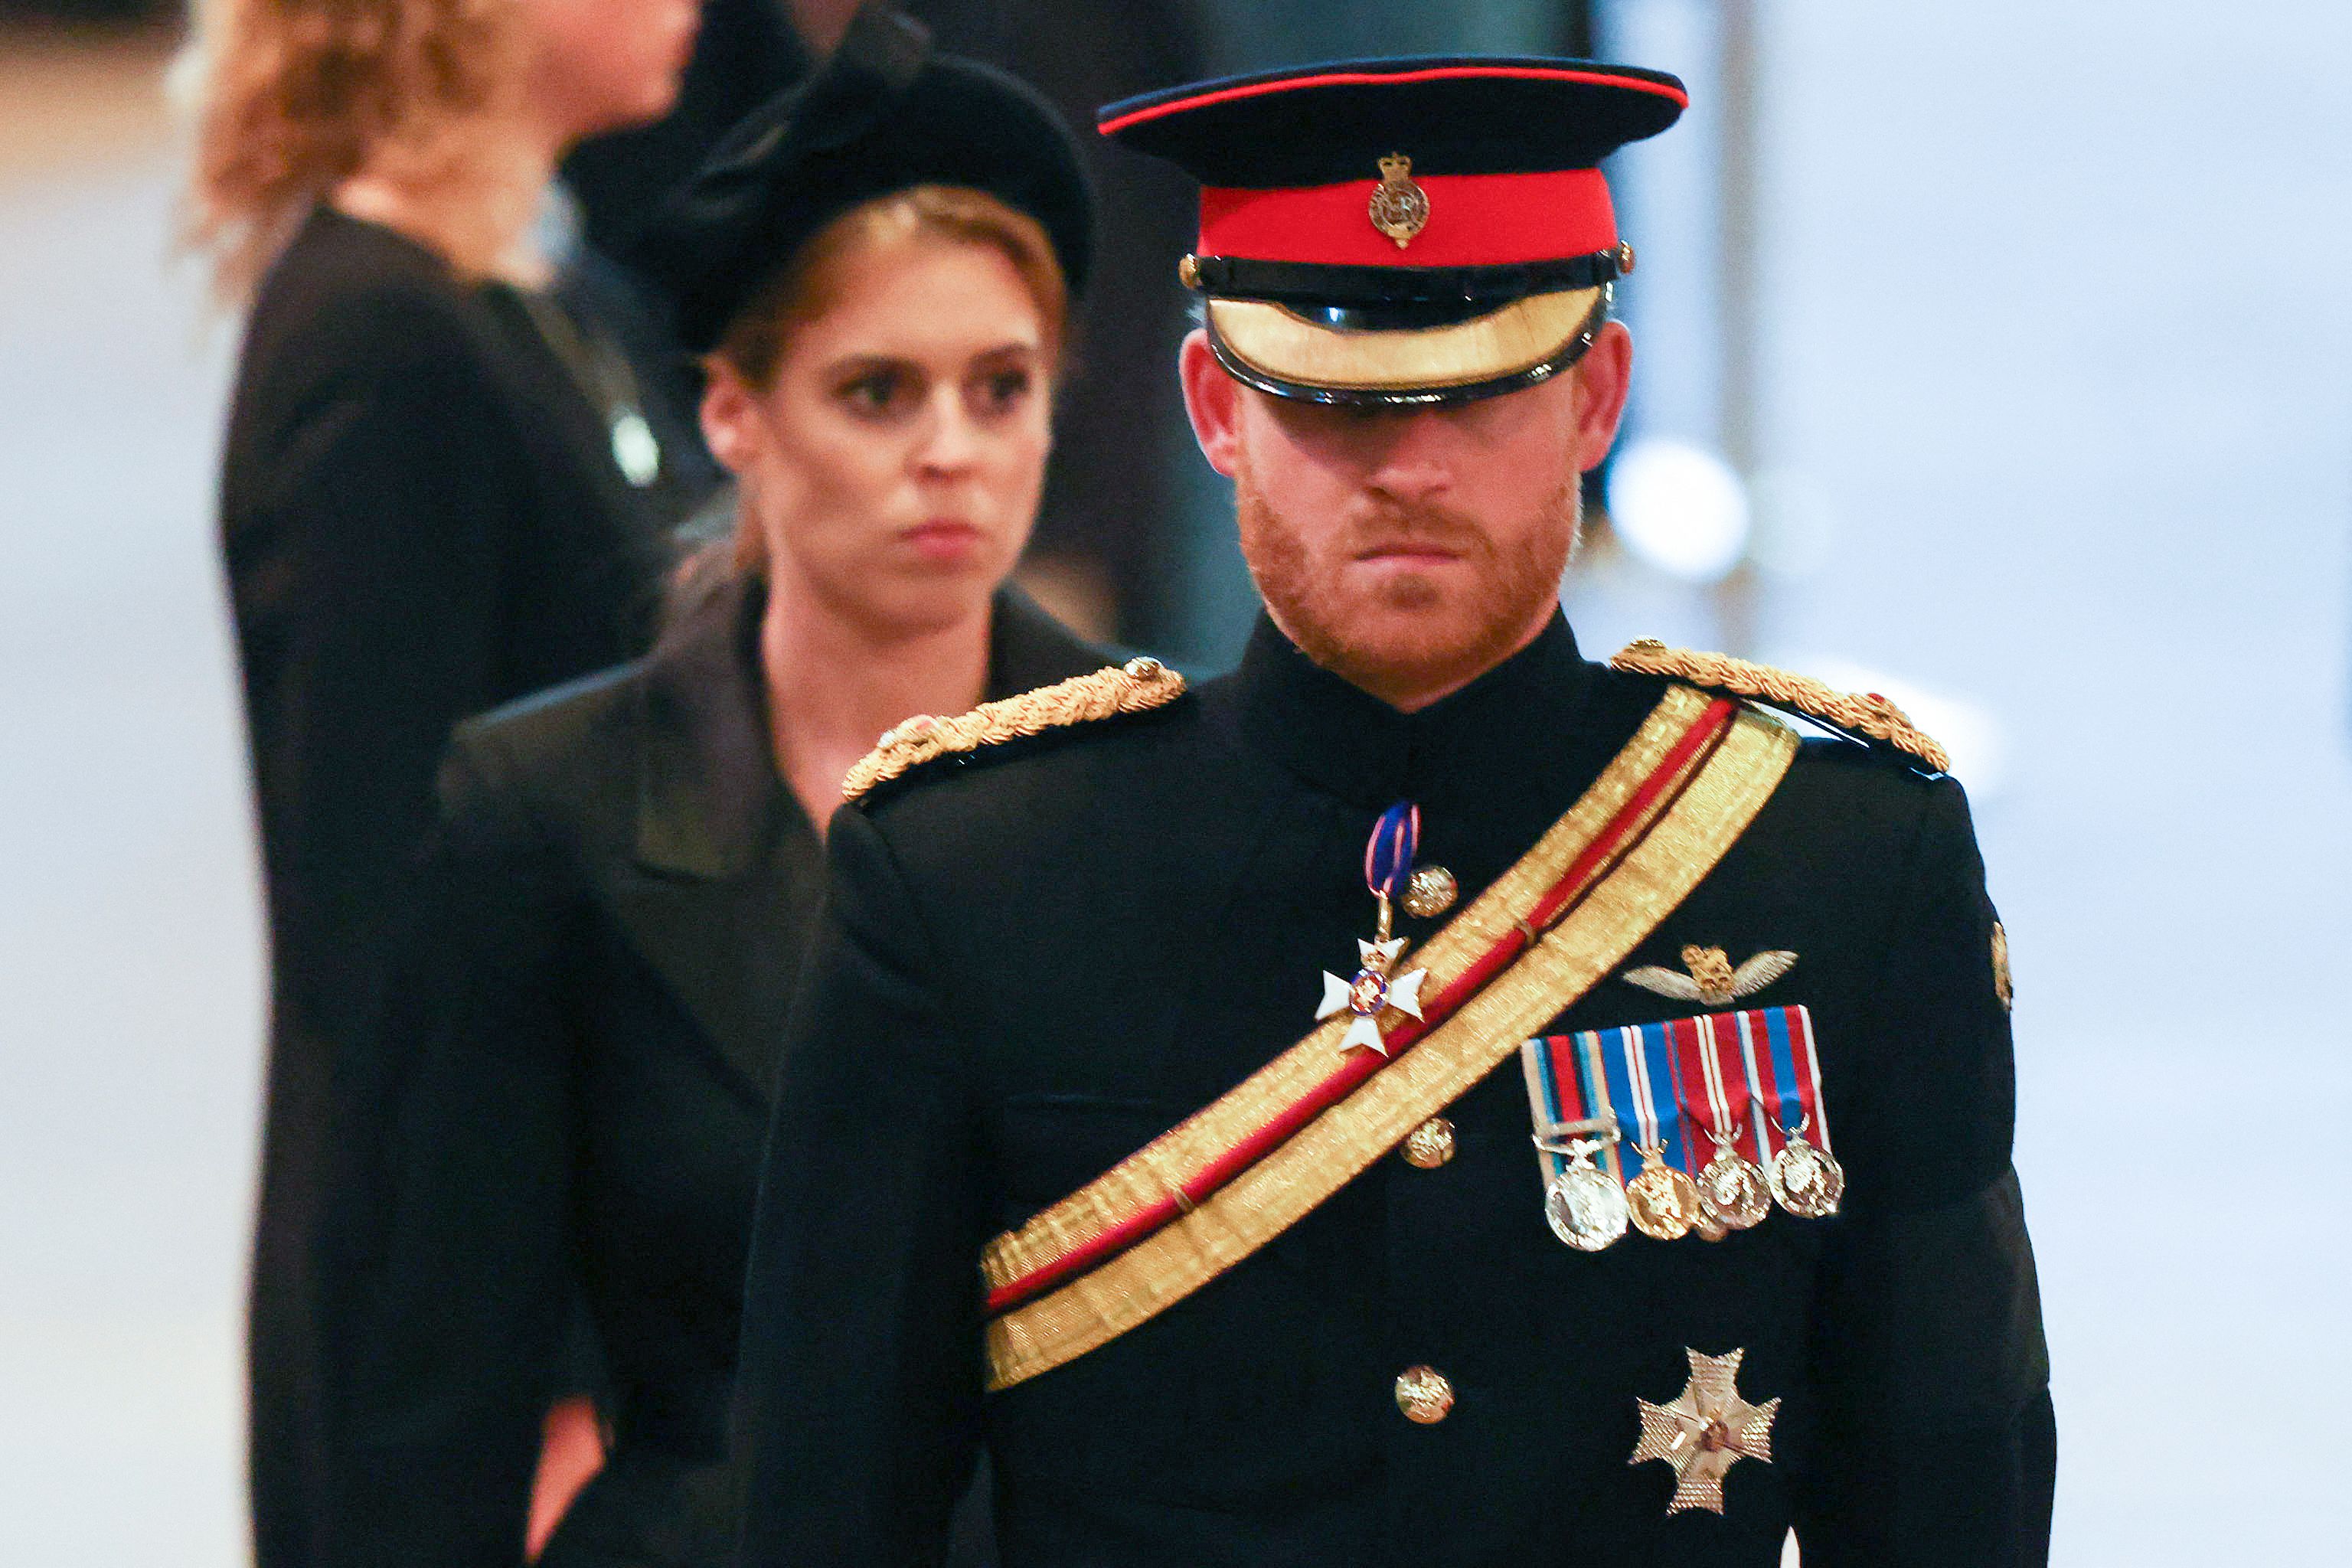 Esta es  la primera vez que el príncipe Harry aparece con uniforme militar desde que renunció como miembro de la realeza en 2020.(Foto Prensa Libre: Ian Vogler / POOL / AFP)